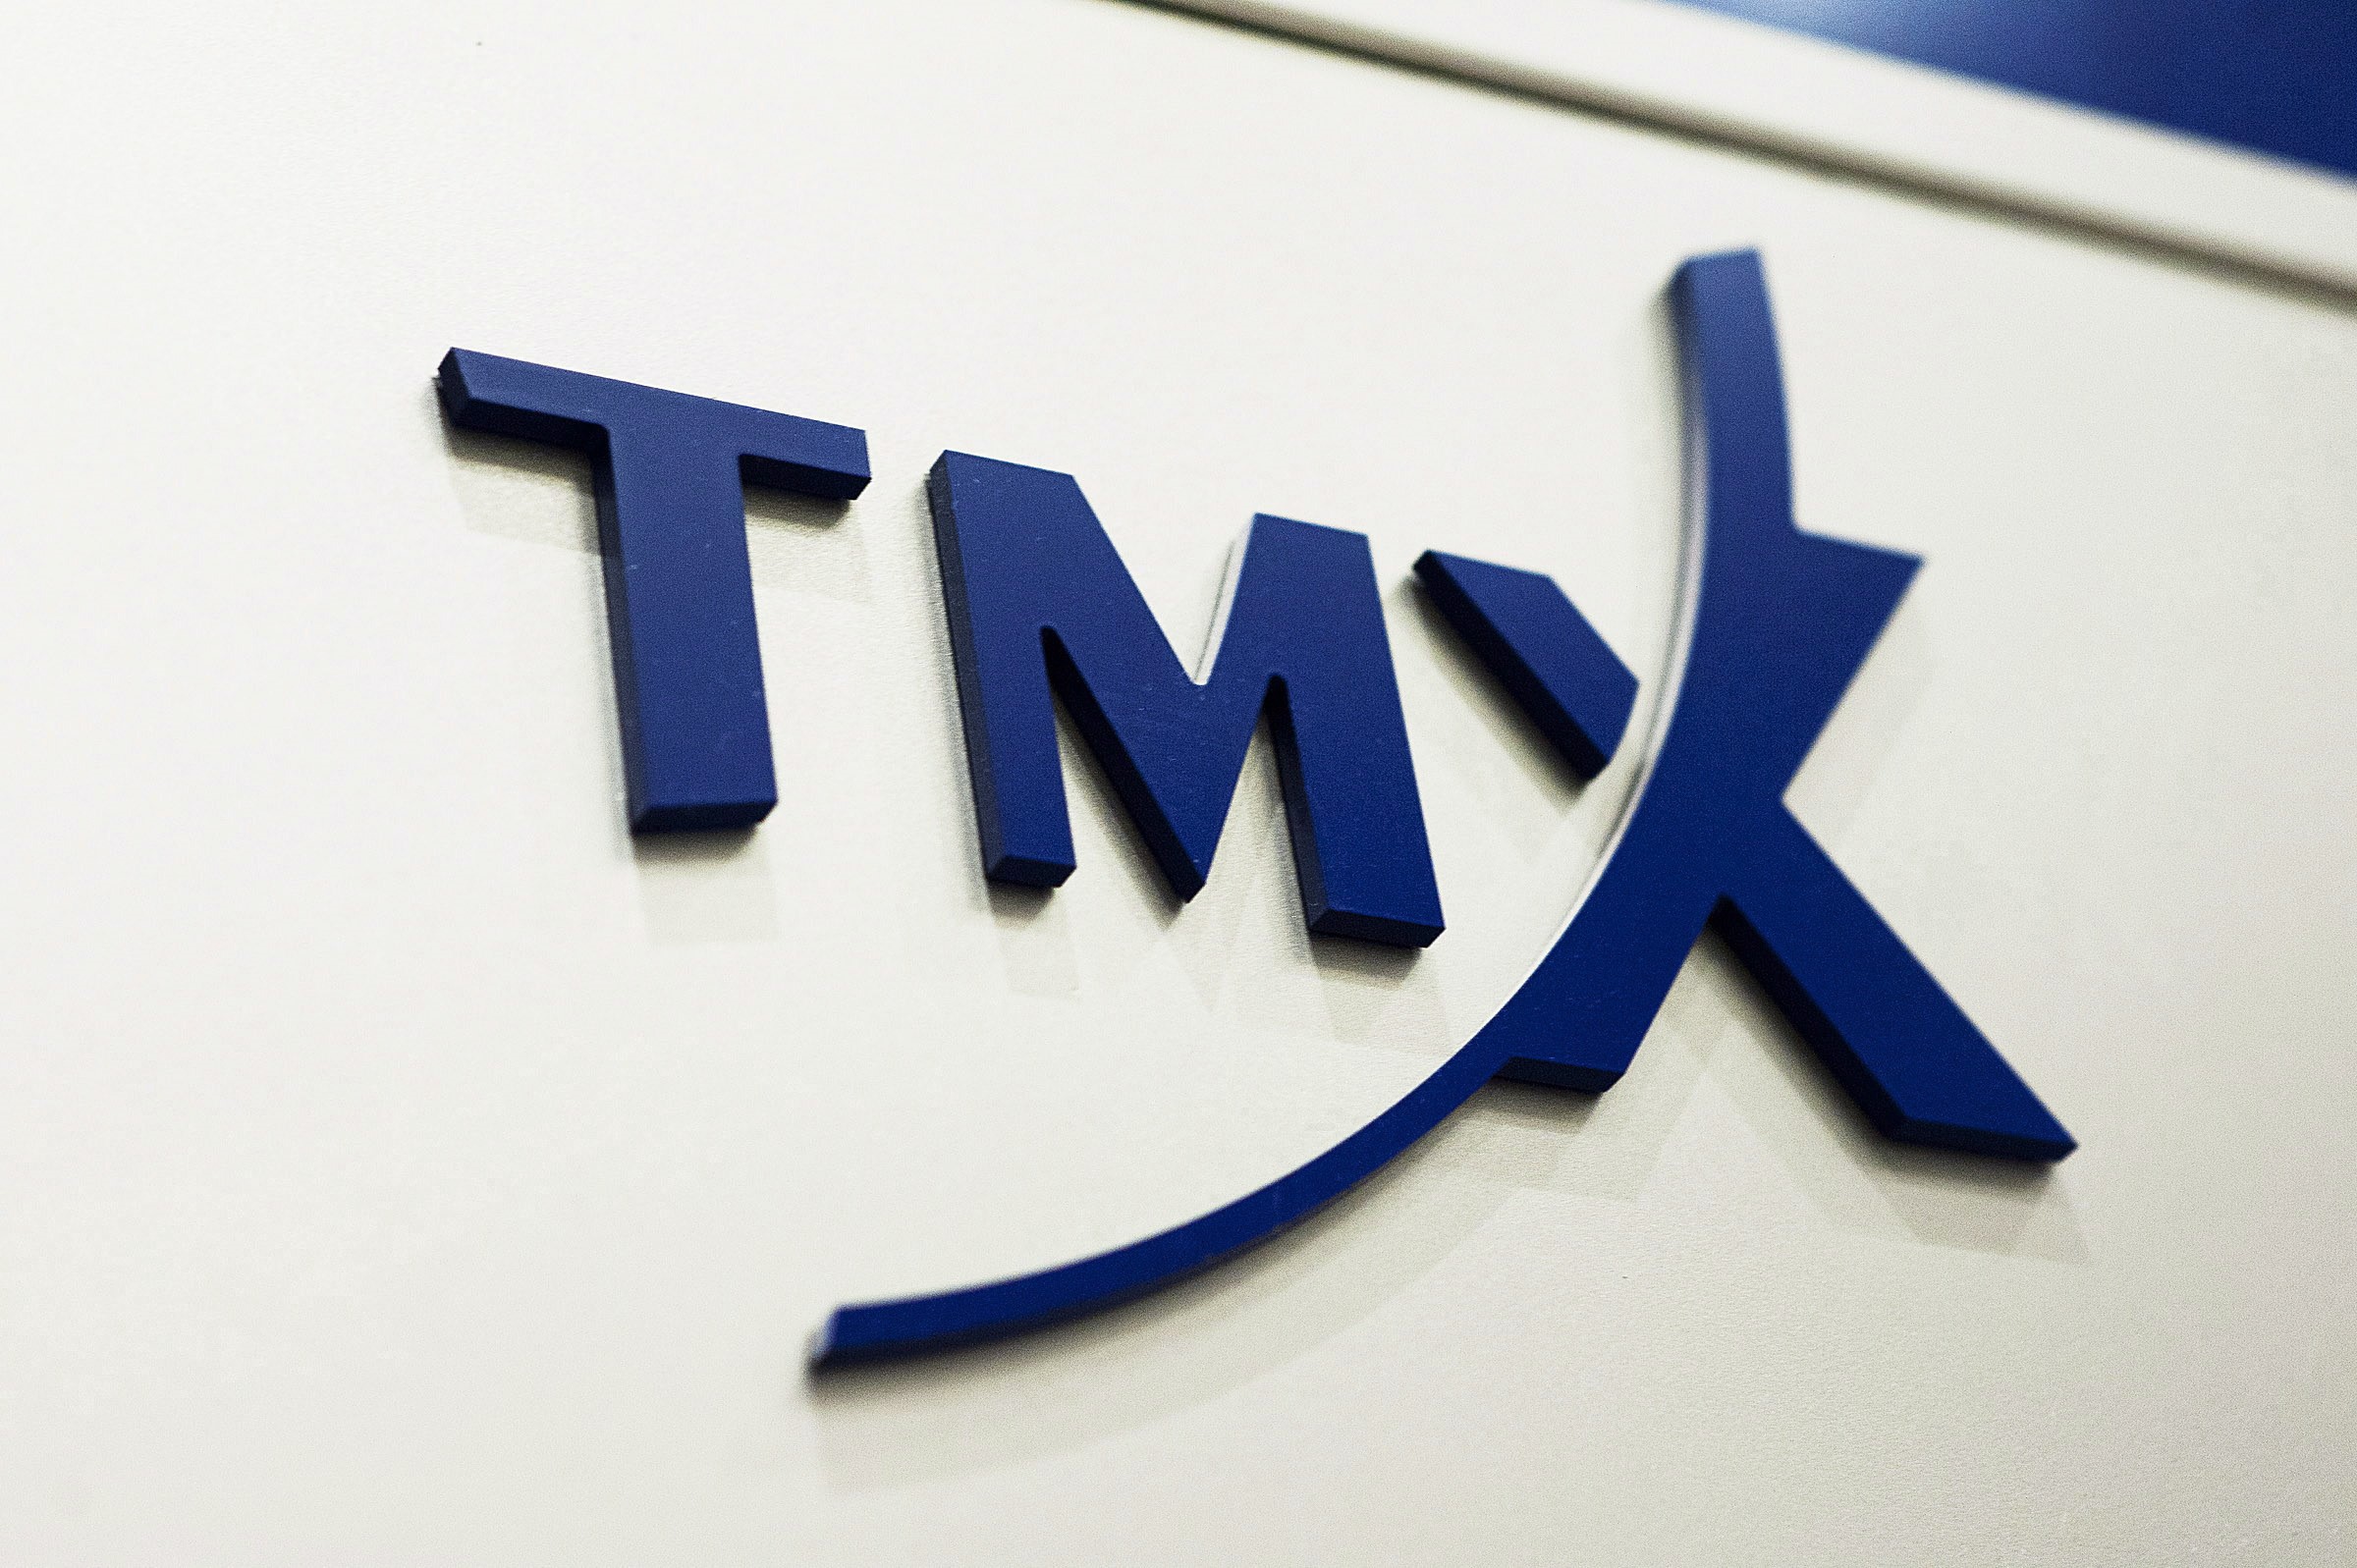 مجموعة تي ام اكس TMX تنهي عملية الاستحواذ على فيتافي VettaFi بقيمة 1.4 مليار دولار كندي